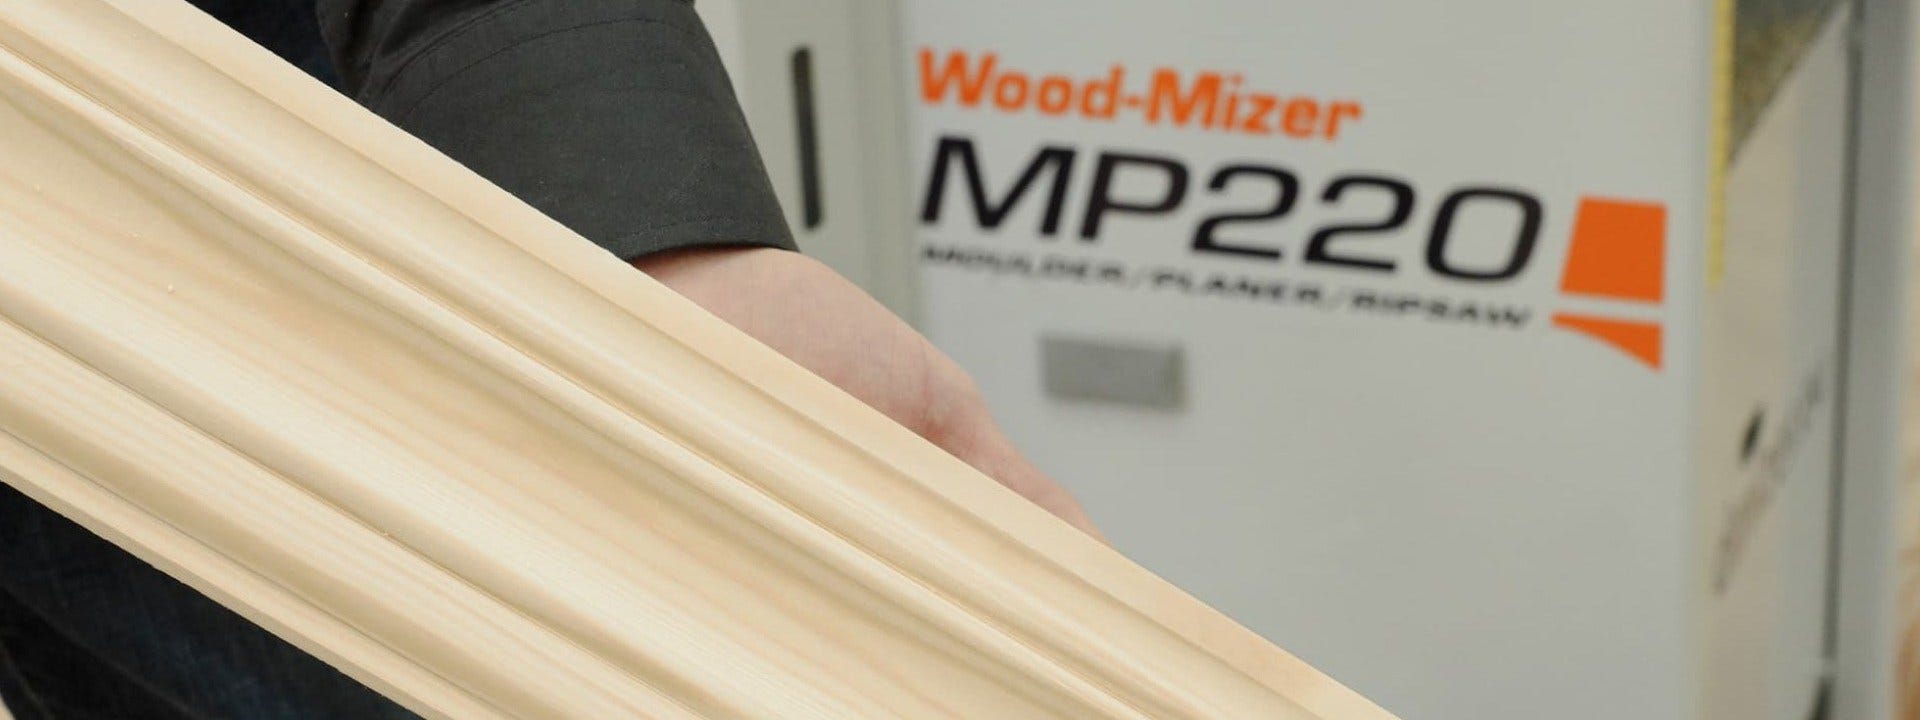 Wood-Mizer MP220 Moulder/Planer/Ripsaw 